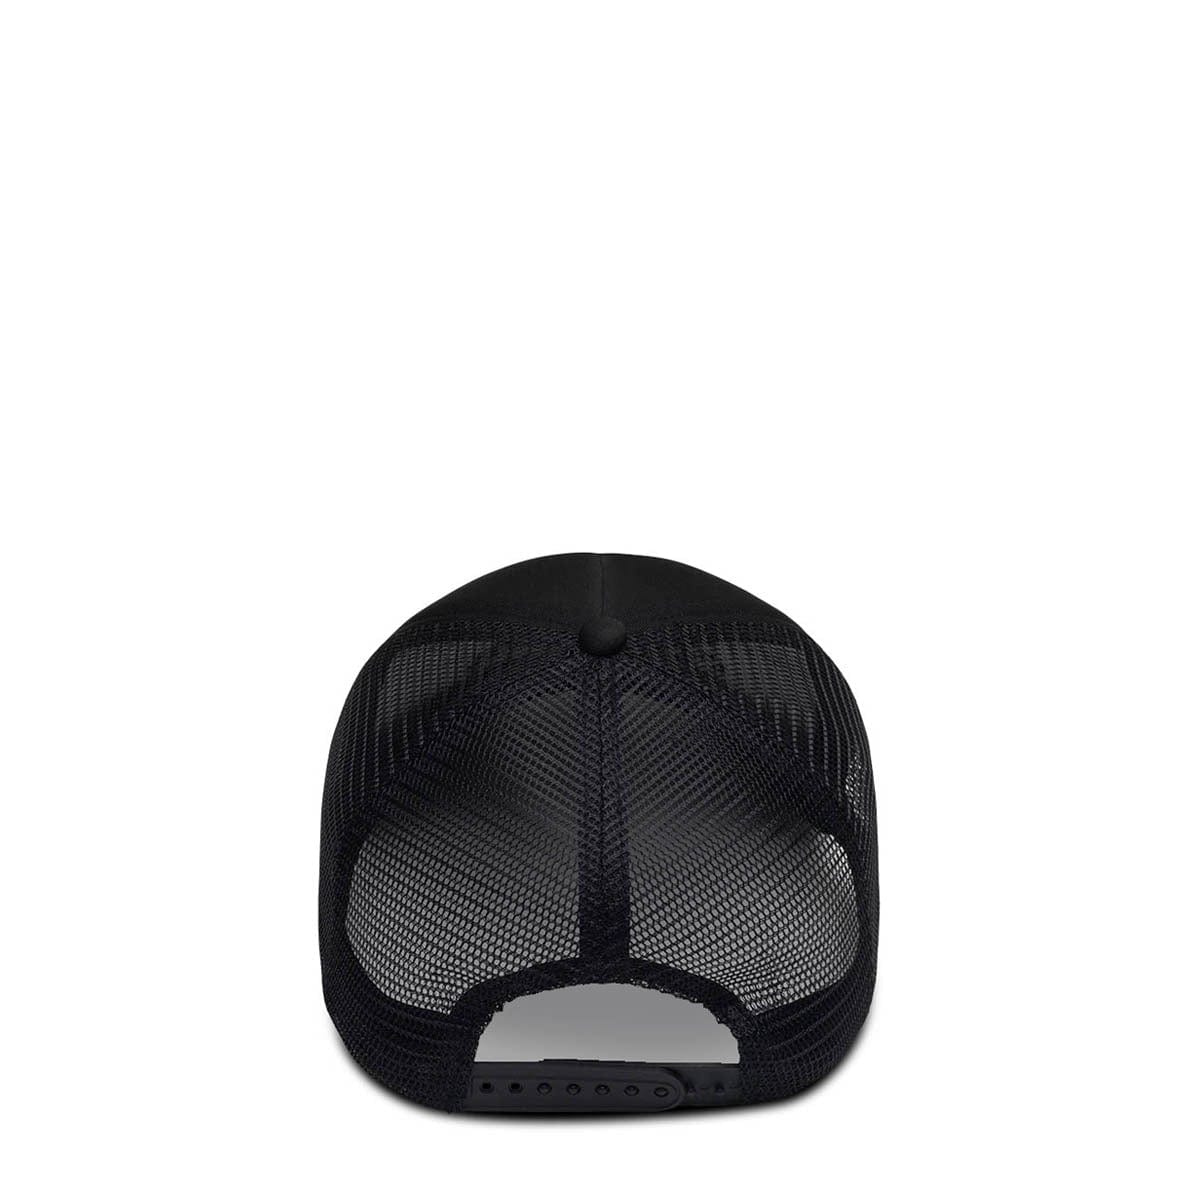 Afield Out Headwear BLACK / O/S EQUIPMENT TRUCKER HAT